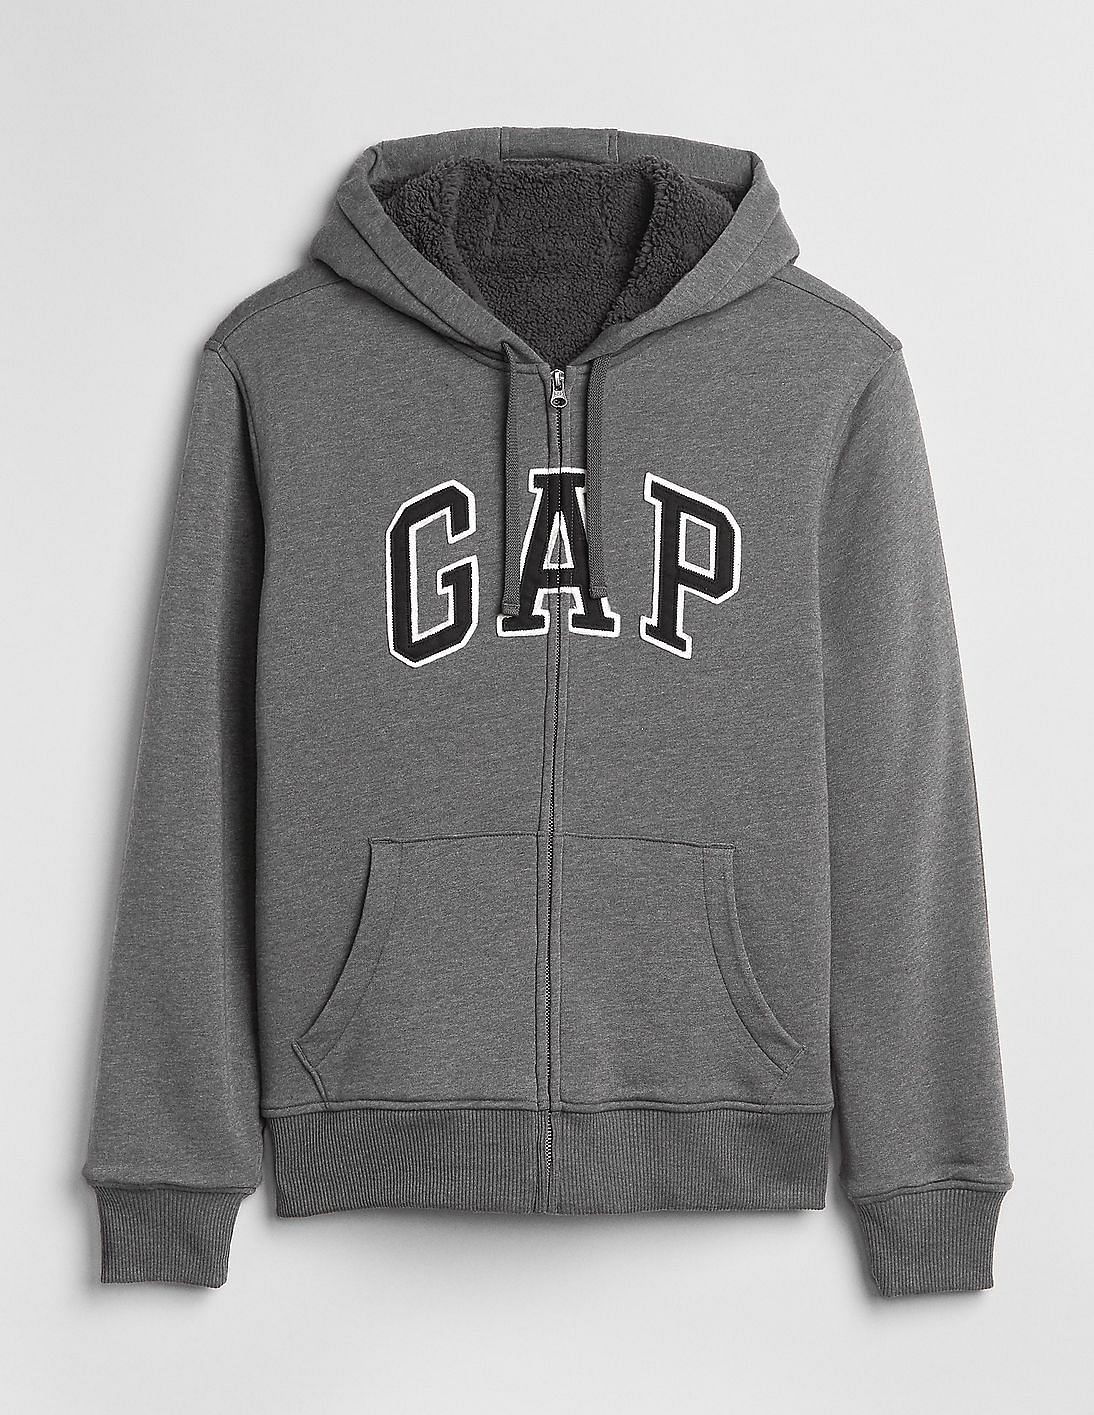 gap sherpa hoodie mens